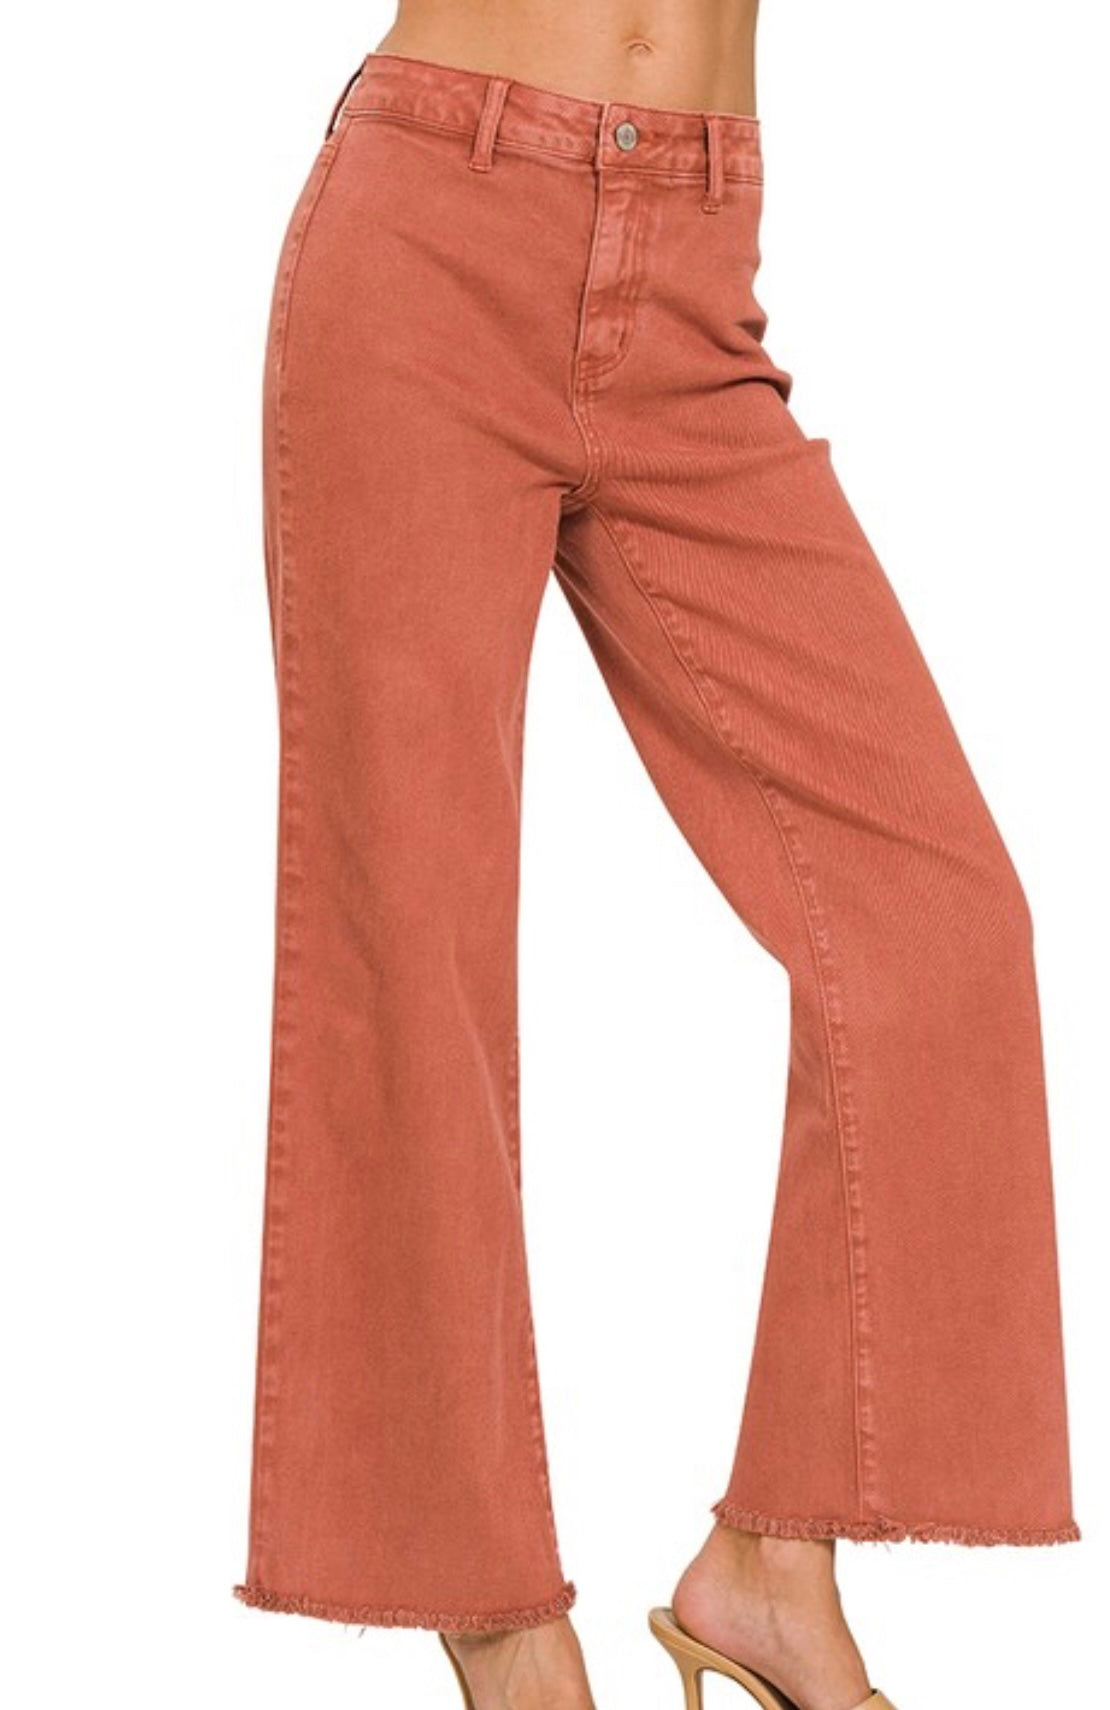 #1 Wide leg color jeans!